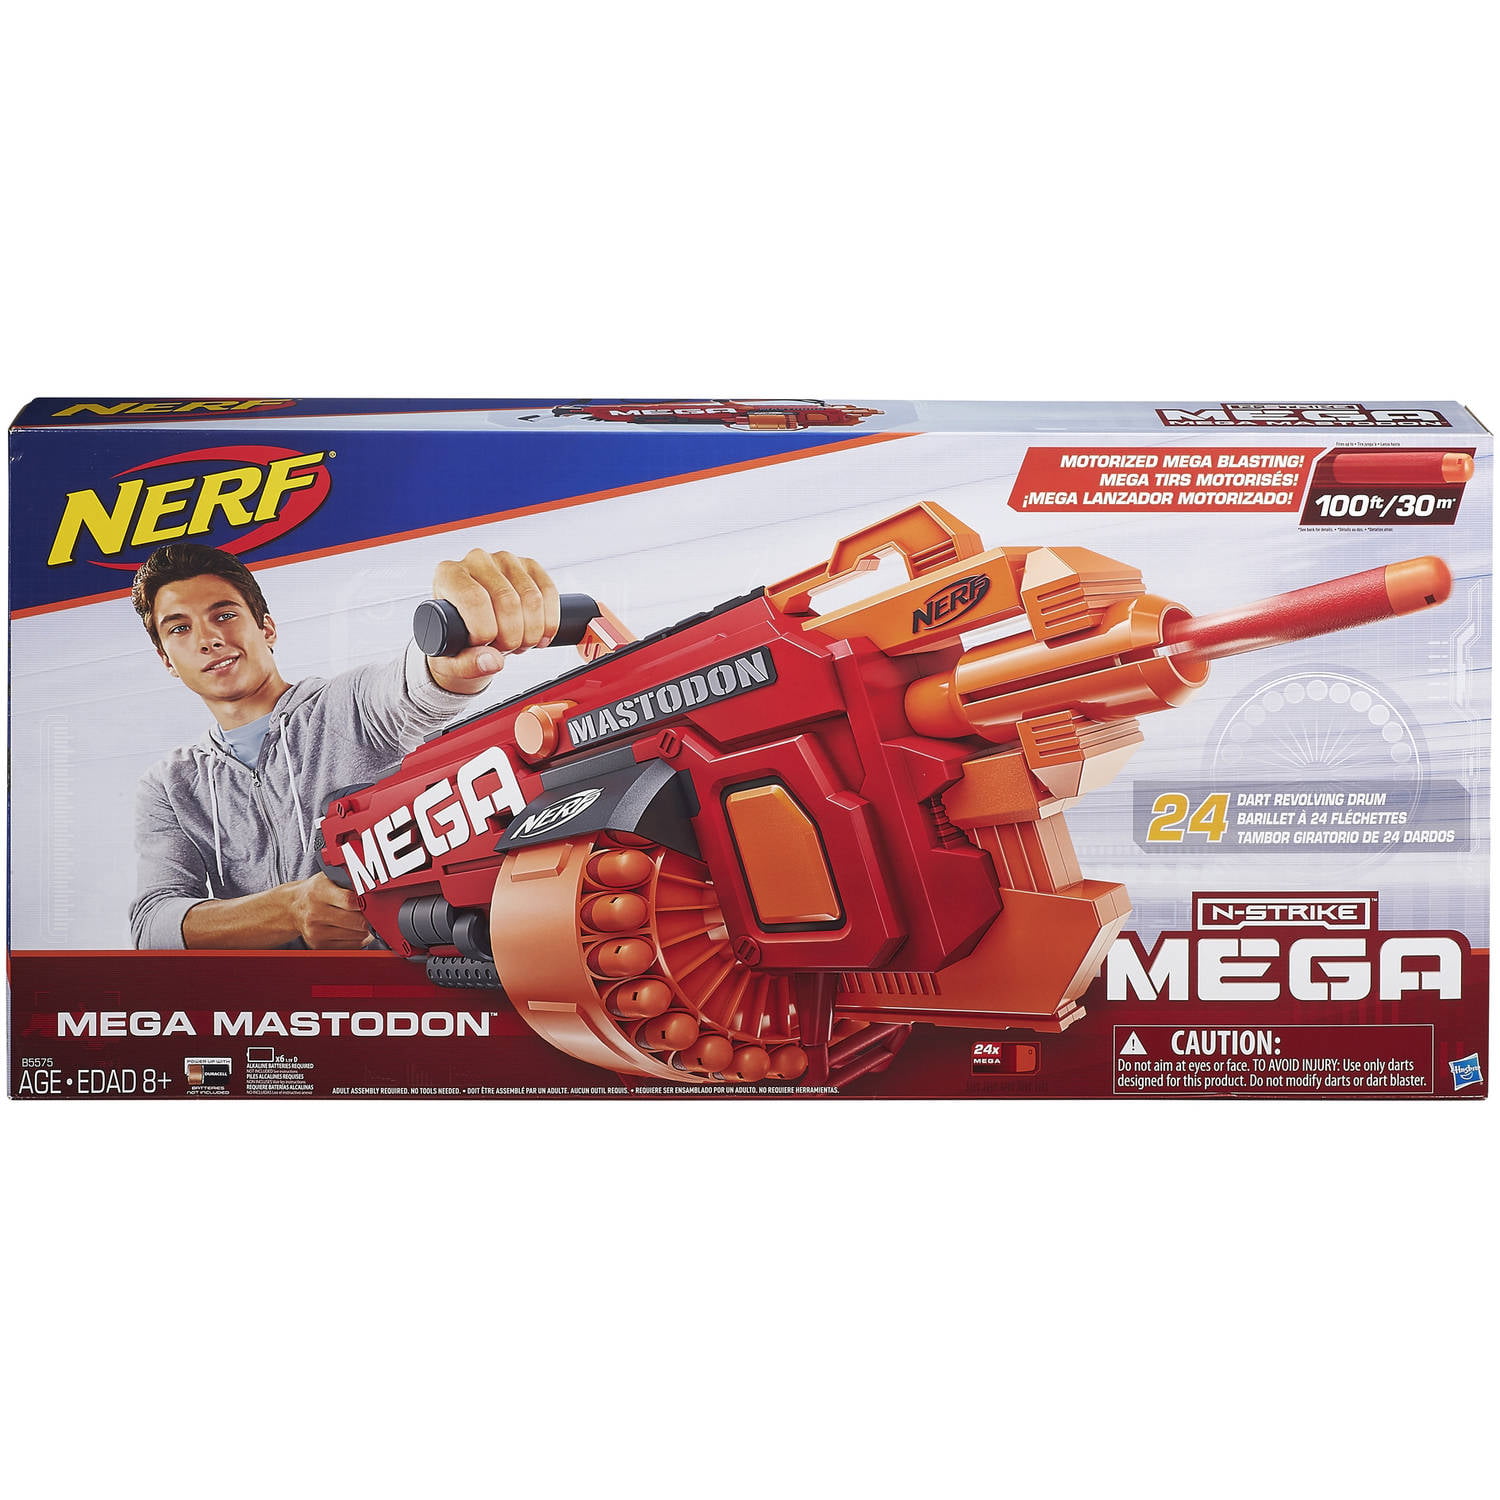 Nerf N-Strike Mega Mastodon Blaster Walmart.com